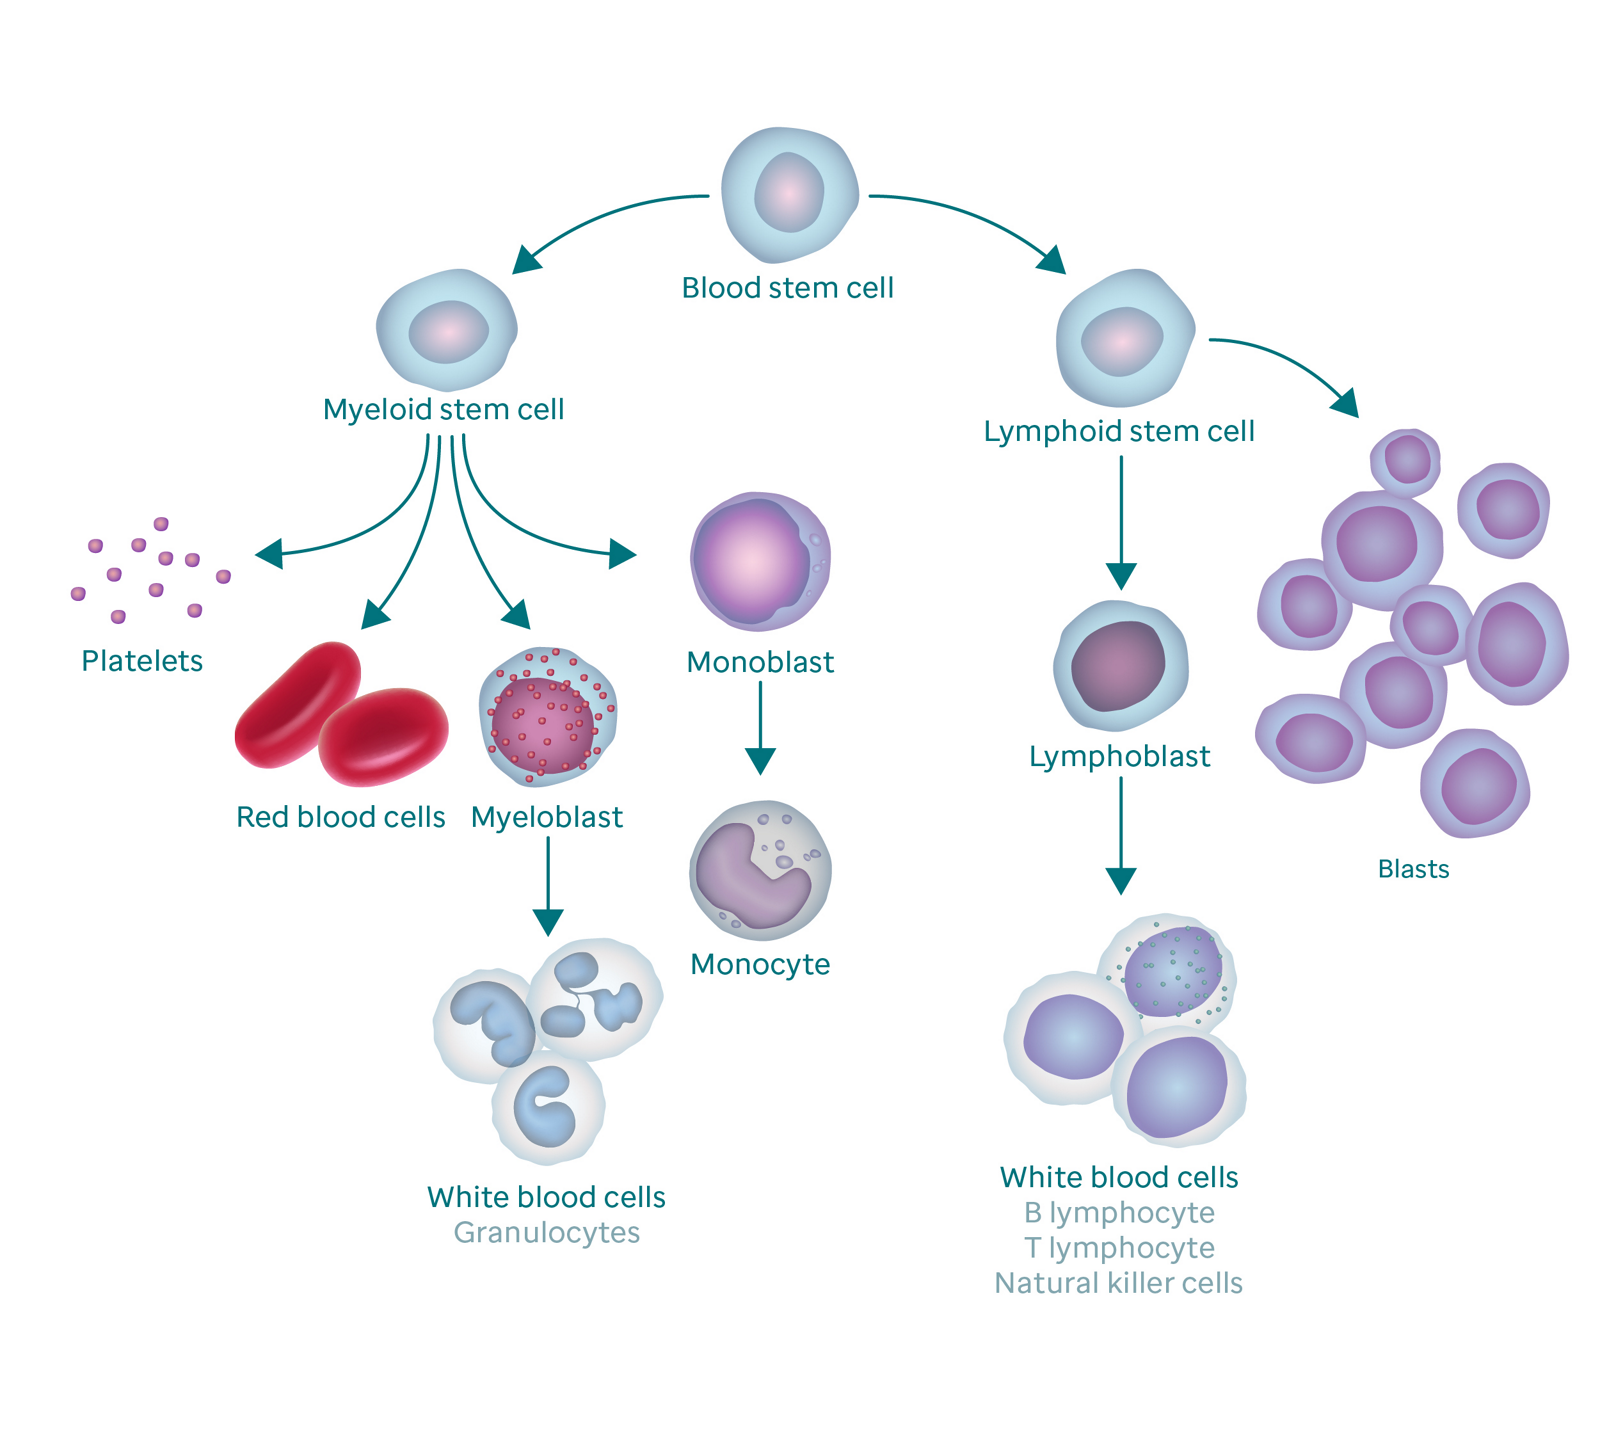 血液の形成過程と、それがどのようにして芽細胞になるかを示す図。 グラフィックは血液幹細胞から始まります。 左側では、骨髄幹細胞に分岐し、血小板、赤血球、骨髄芽球、および単芽球に分岐します。 骨髄芽球は白血球（顆粒球とも呼ばれます）に変化し、単芽球は単球に変化します。 血液幹細胞の右枝はリンパ幹細胞に行き、リンパ芽球（白血球に変化する）と芽球に分岐します。